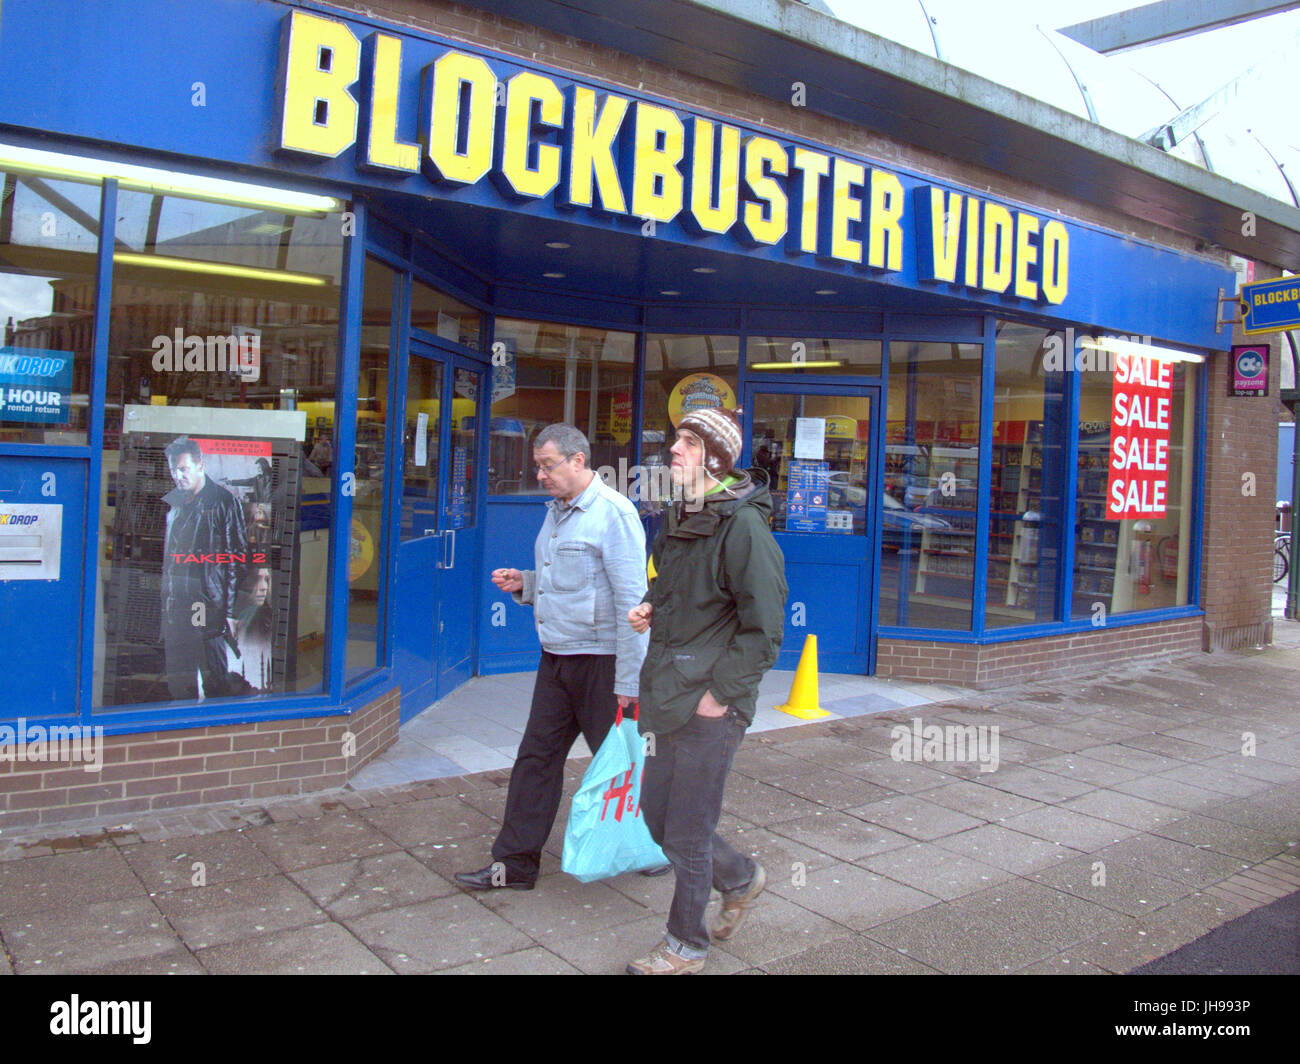 Blockbuster video street negozio in Glasgow Partick dopo somministrazione di essere smantellata durante il suo trapasso al momento Foto Stock